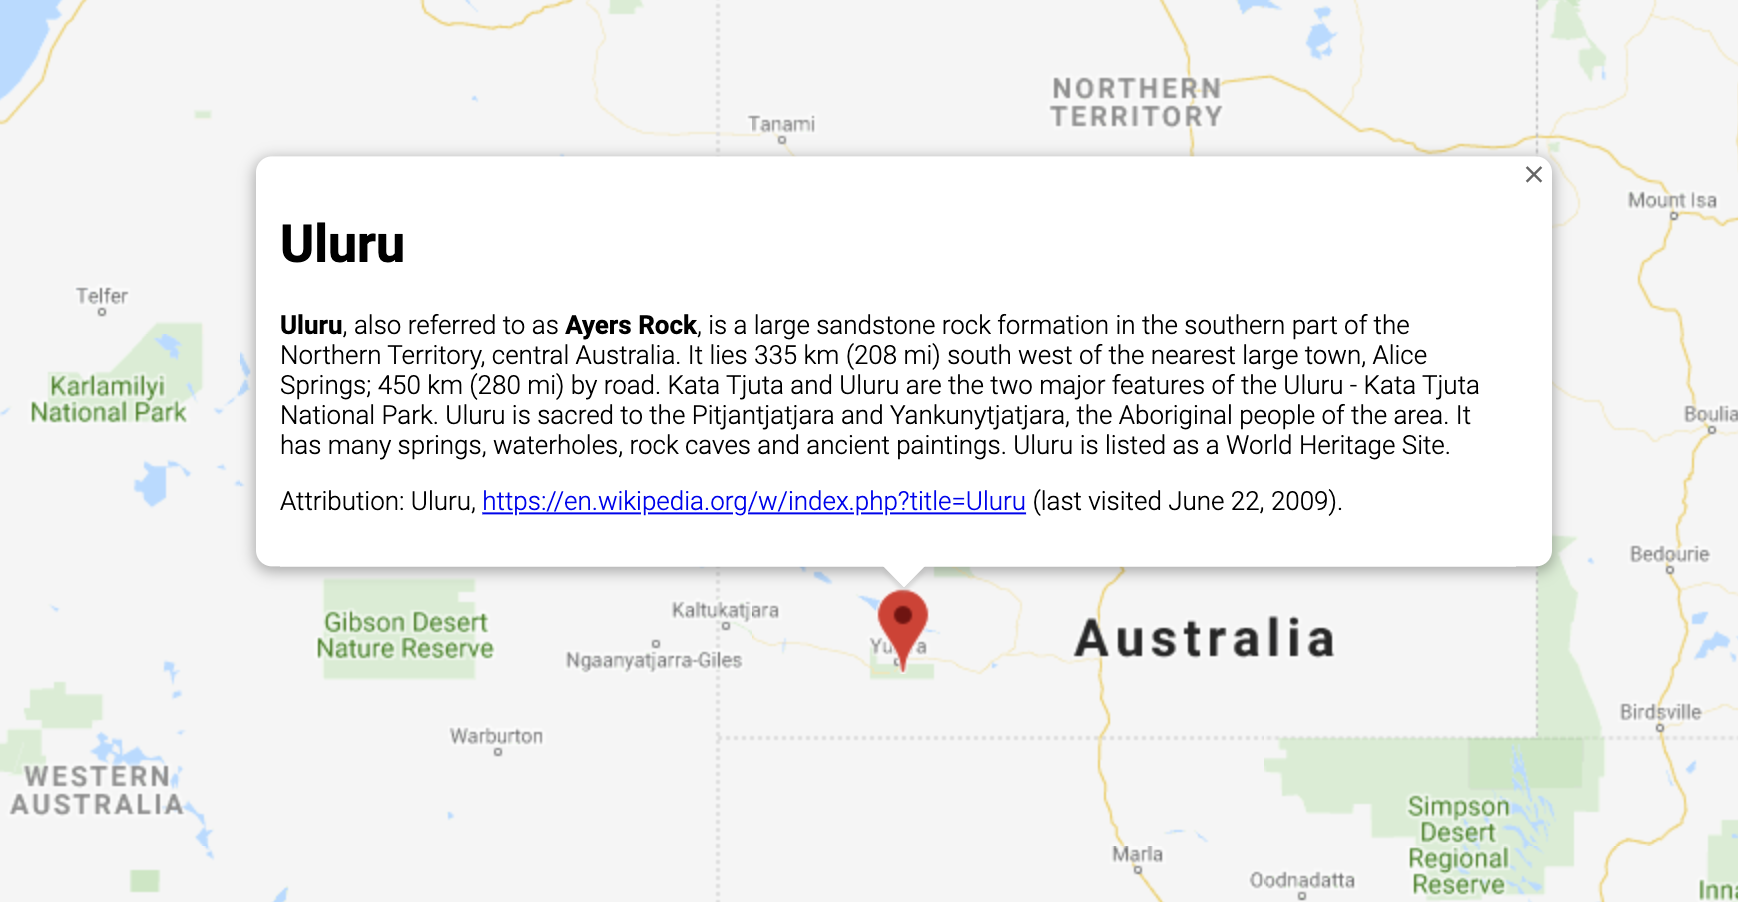 Okno Info z informacjami o lokalizacji w Australii.